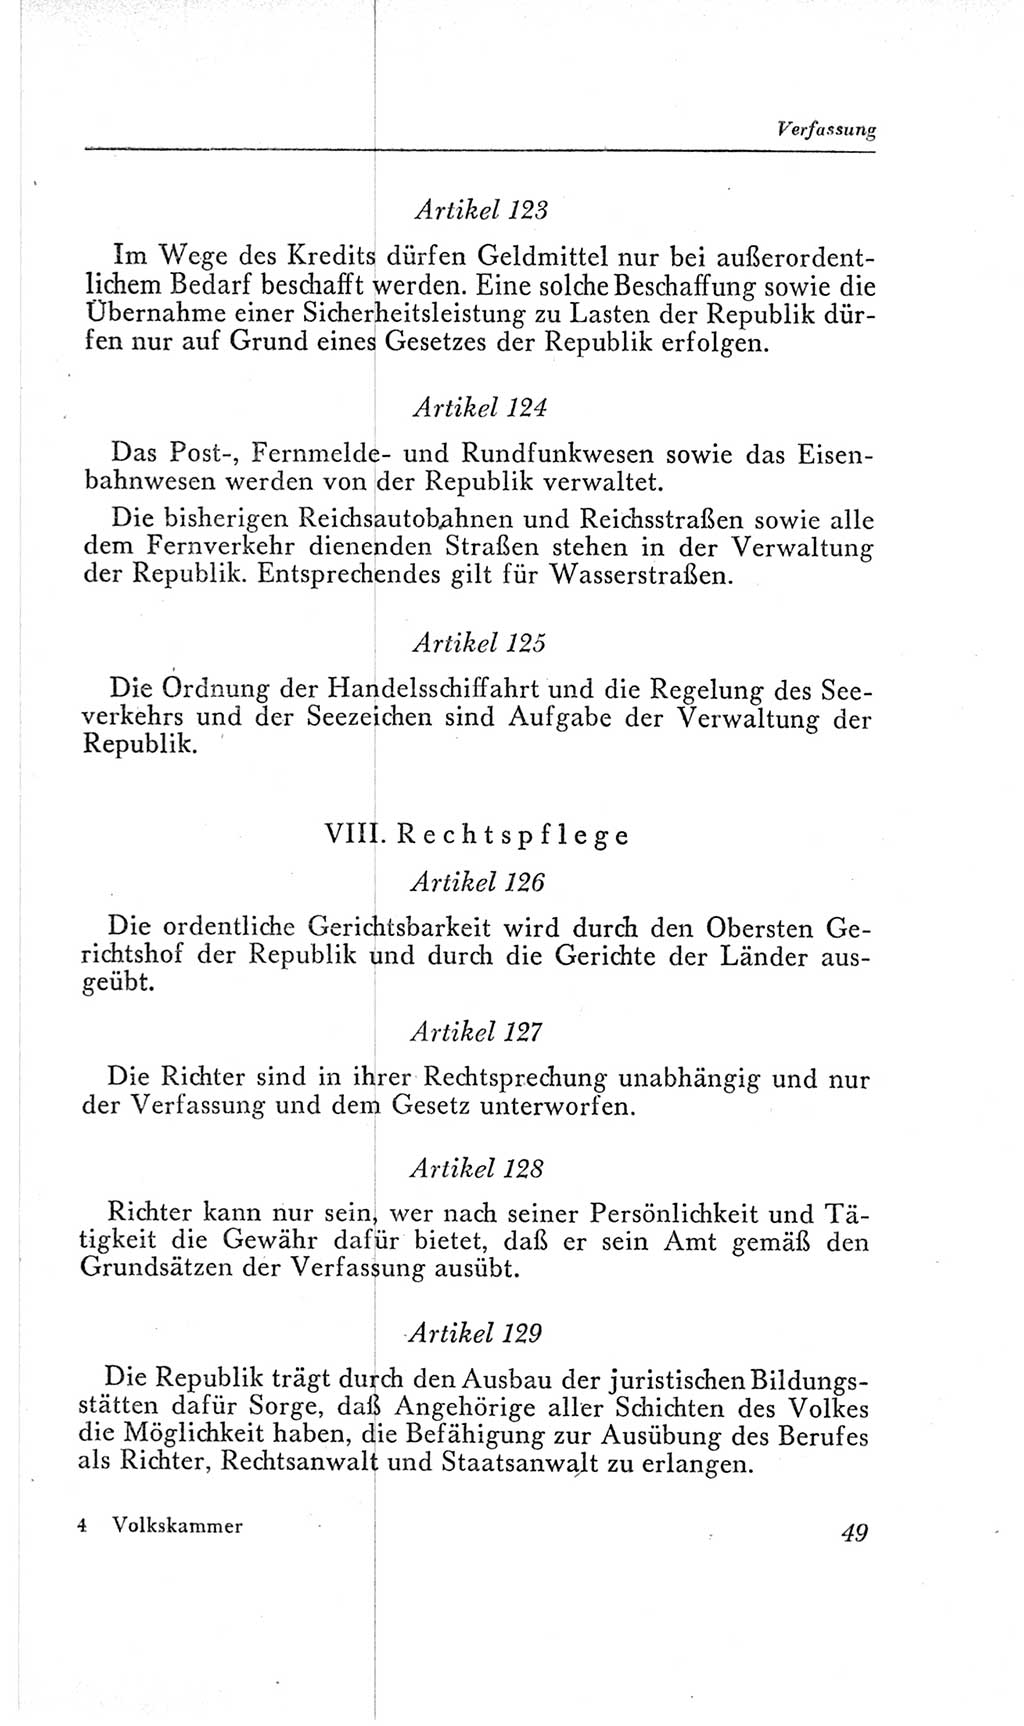 Handbuch der Volkskammer (VK) der Deutschen Demokratischen Republik (DDR), 2. Wahlperiode 1954-1958, Seite 49 (Hdb. VK. DDR, 2. WP. 1954-1958, S. 49)